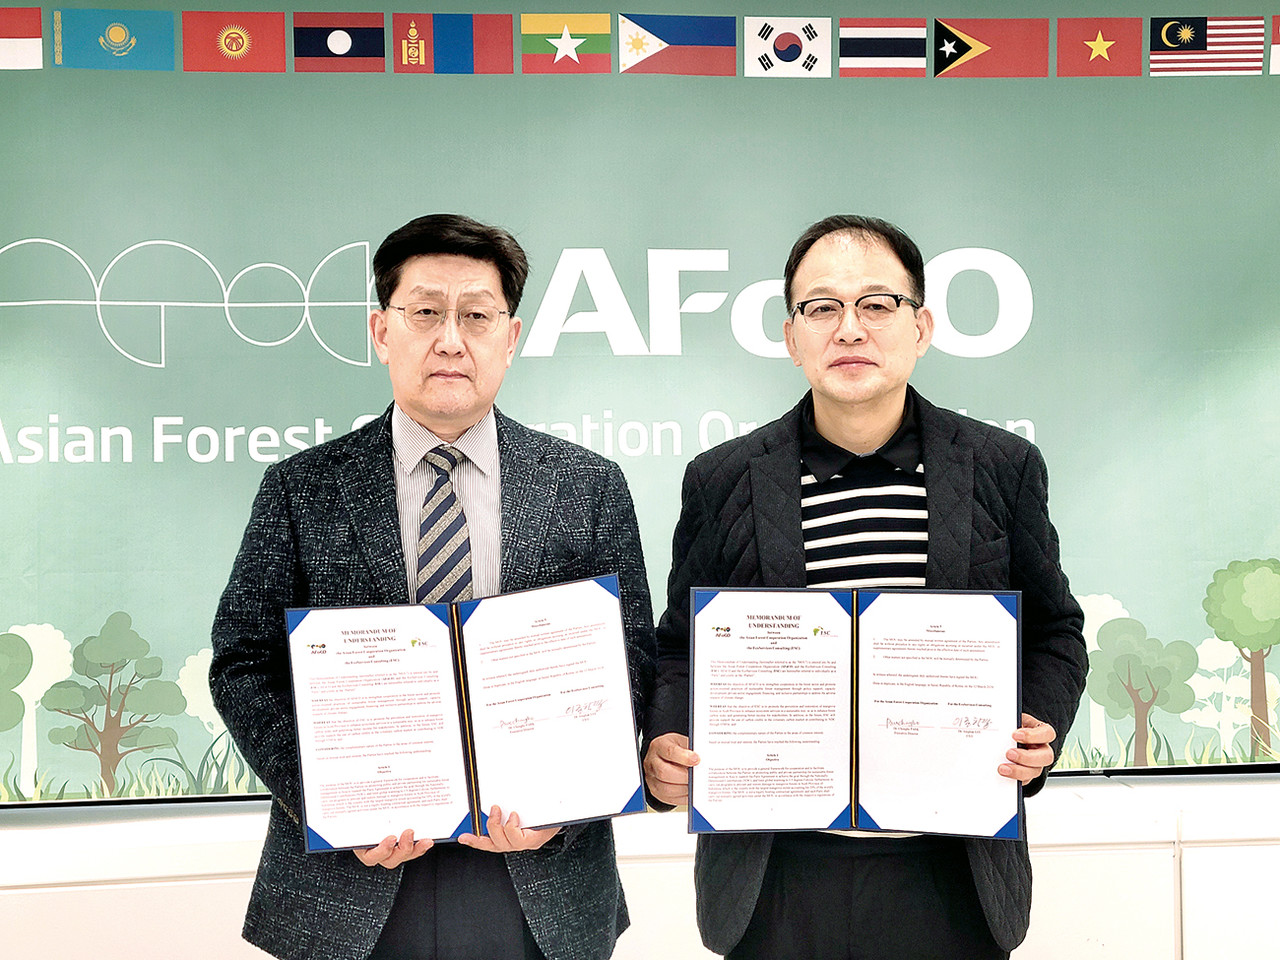 ㈜생태서비스 컨설팅의 이종학 대표이사(사진 왼쪽)과 박종호 AFoCo 사무총장은 인도네시아 아체주 맹그로브 숲 훼손 방지 및 숲 복원 프로젝트를 위해 지난 3월 12일 서울 AFoCo 회의실에서 업무협약식을 진행했다.   